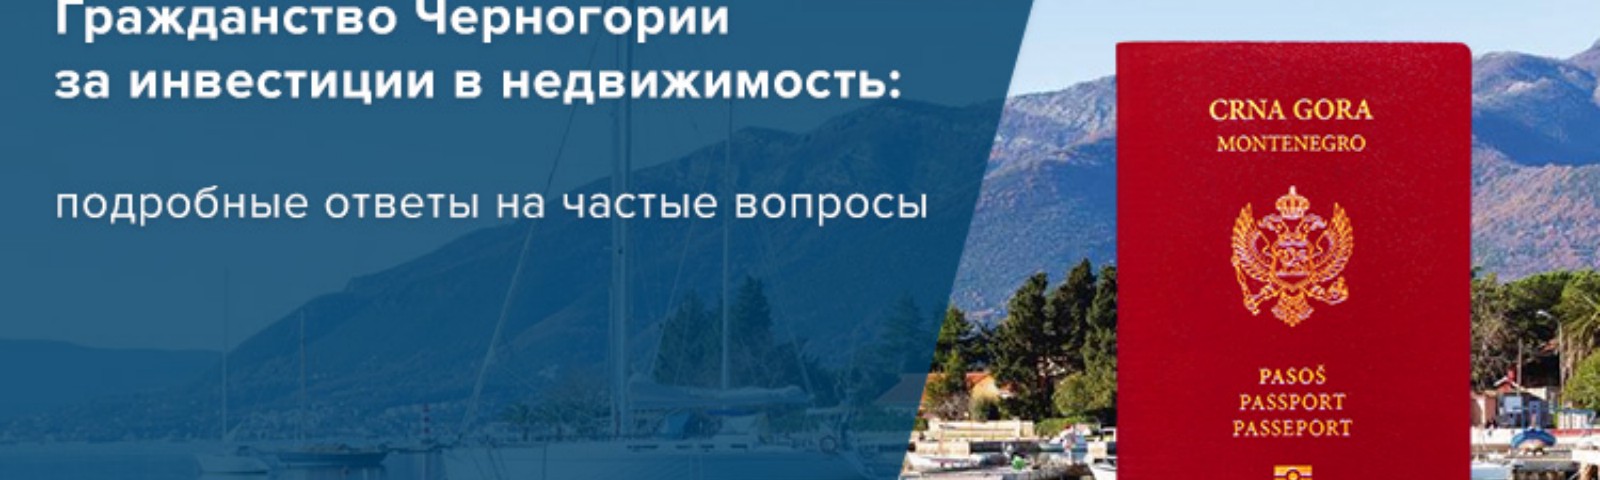 Гражданство черногории в  2021  году: покупка недвижимости, инвестиции